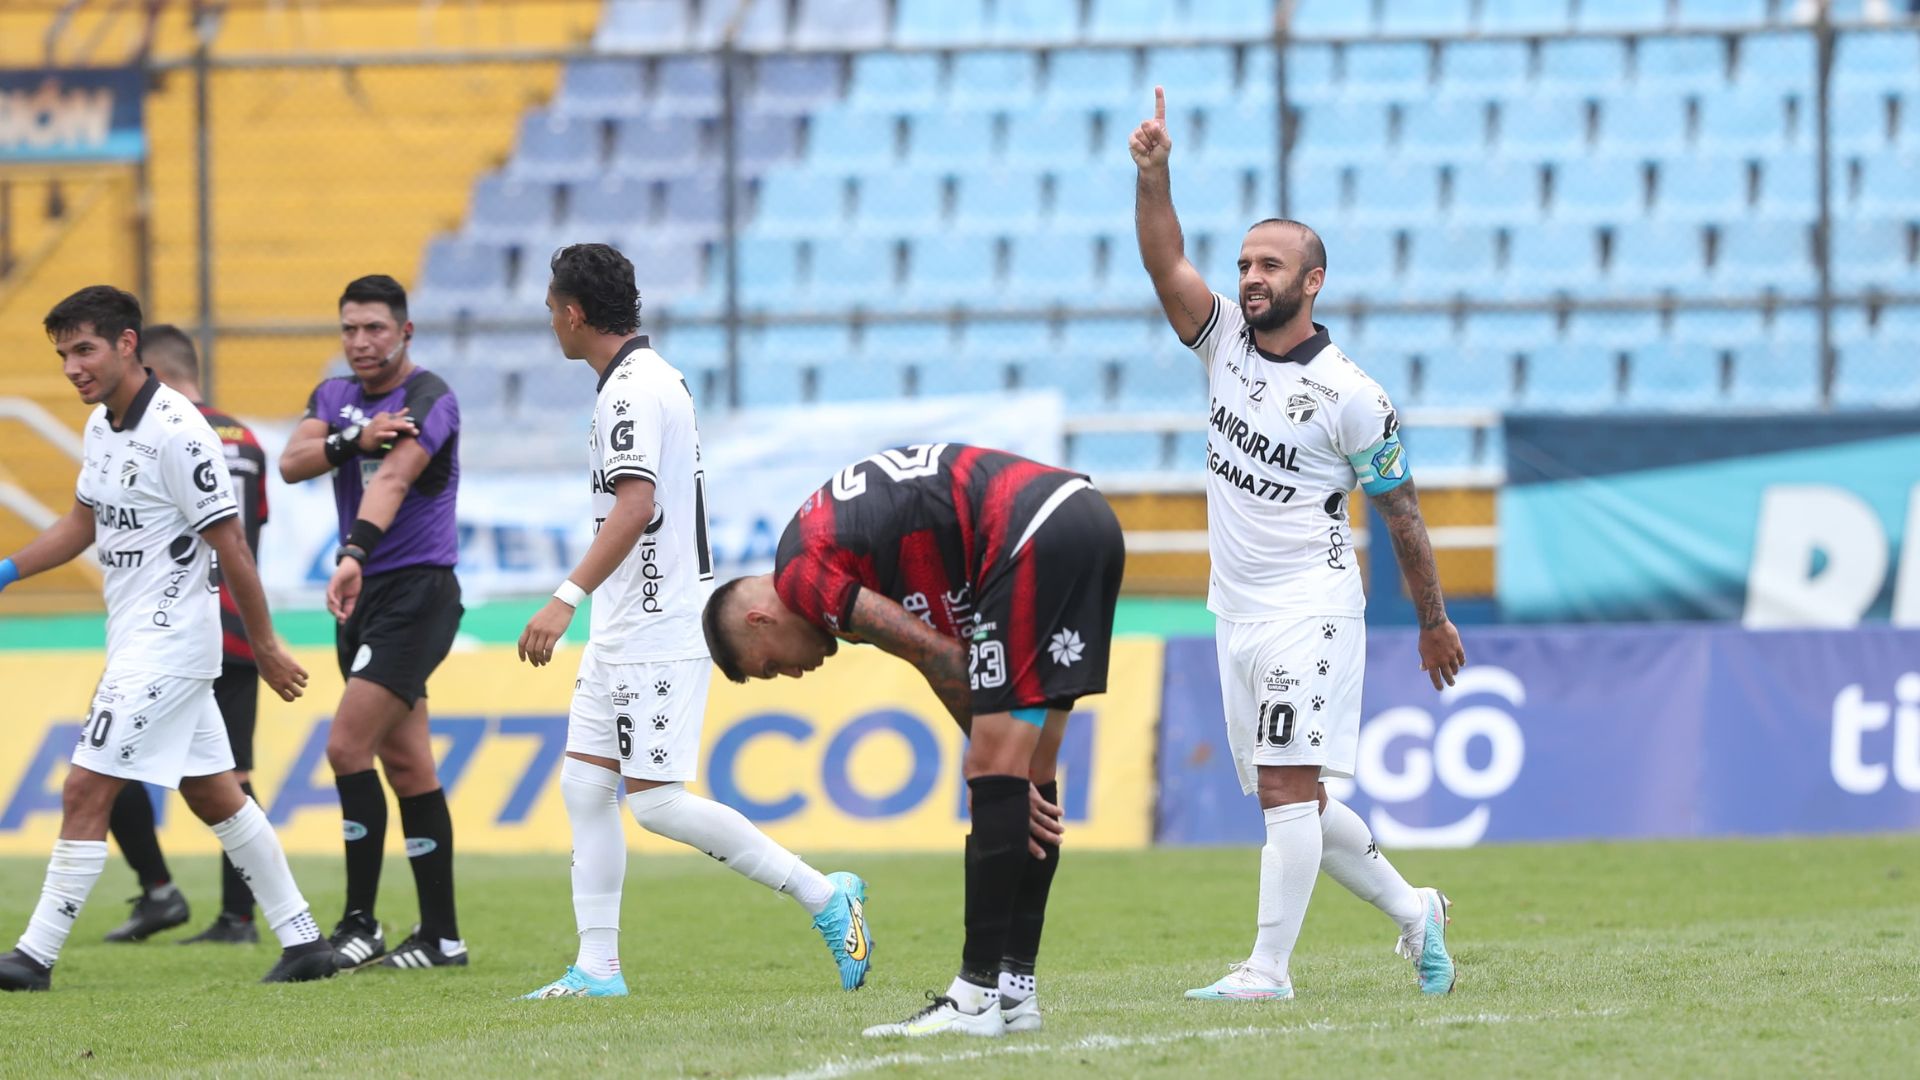 El jugador de Comunicaciones, José Contreras, luego de anotar el tercer gol de su equipo a Coatepeque. (Foto Prensa Libre: Erick Ávila)